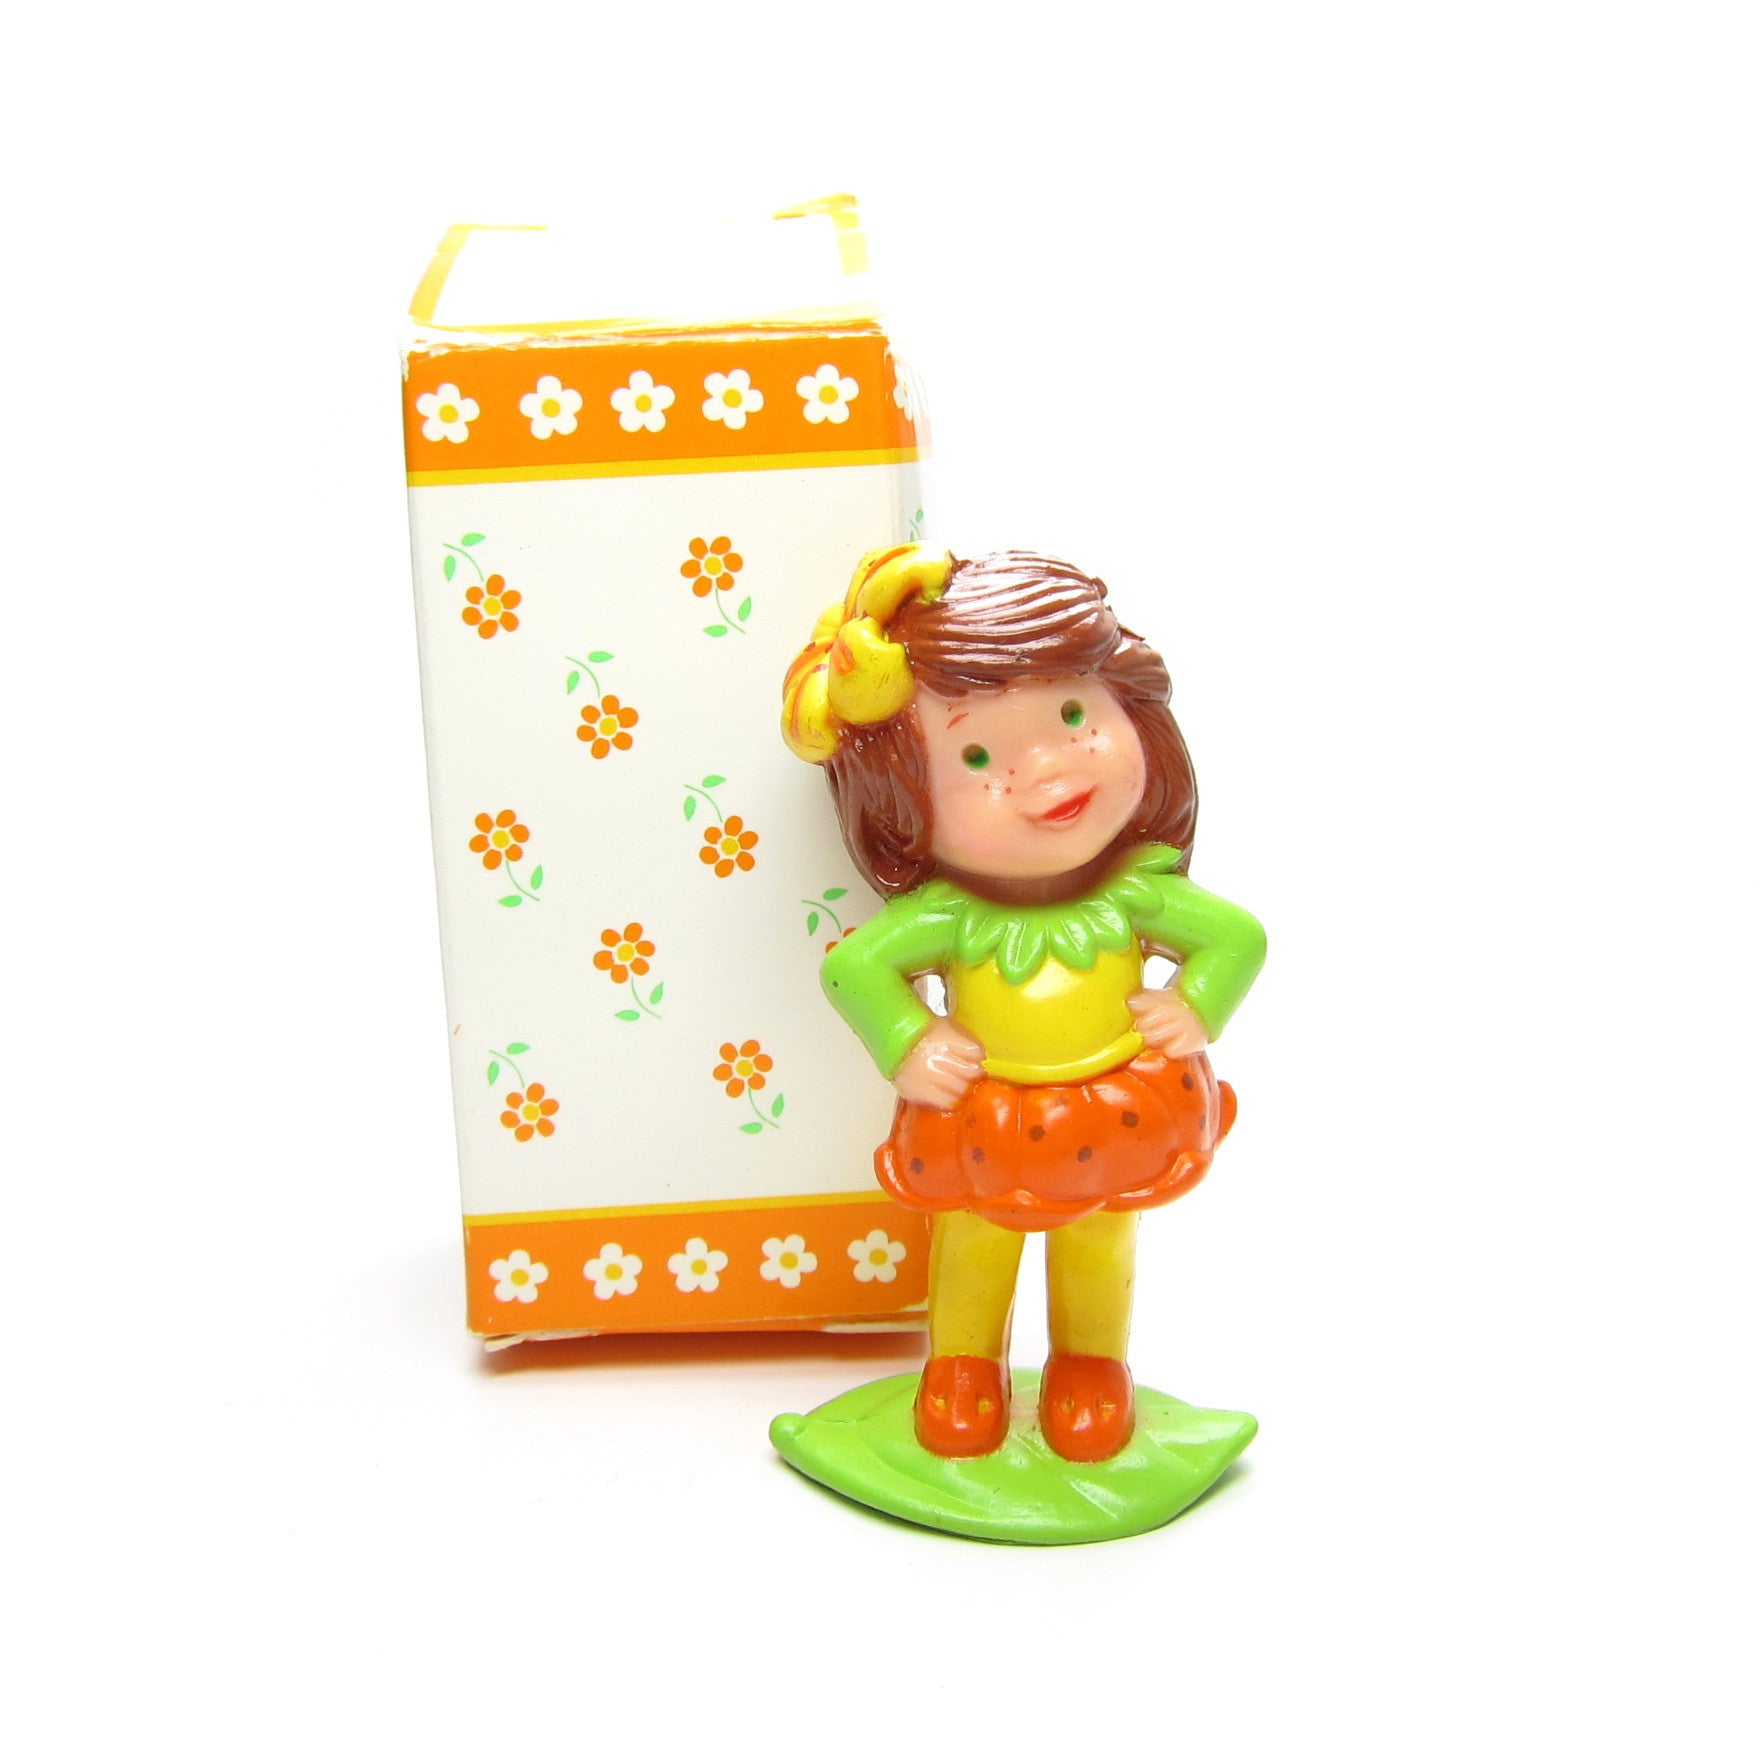 Avon Scamper Lily mini doll Little Blossom miniature figurine